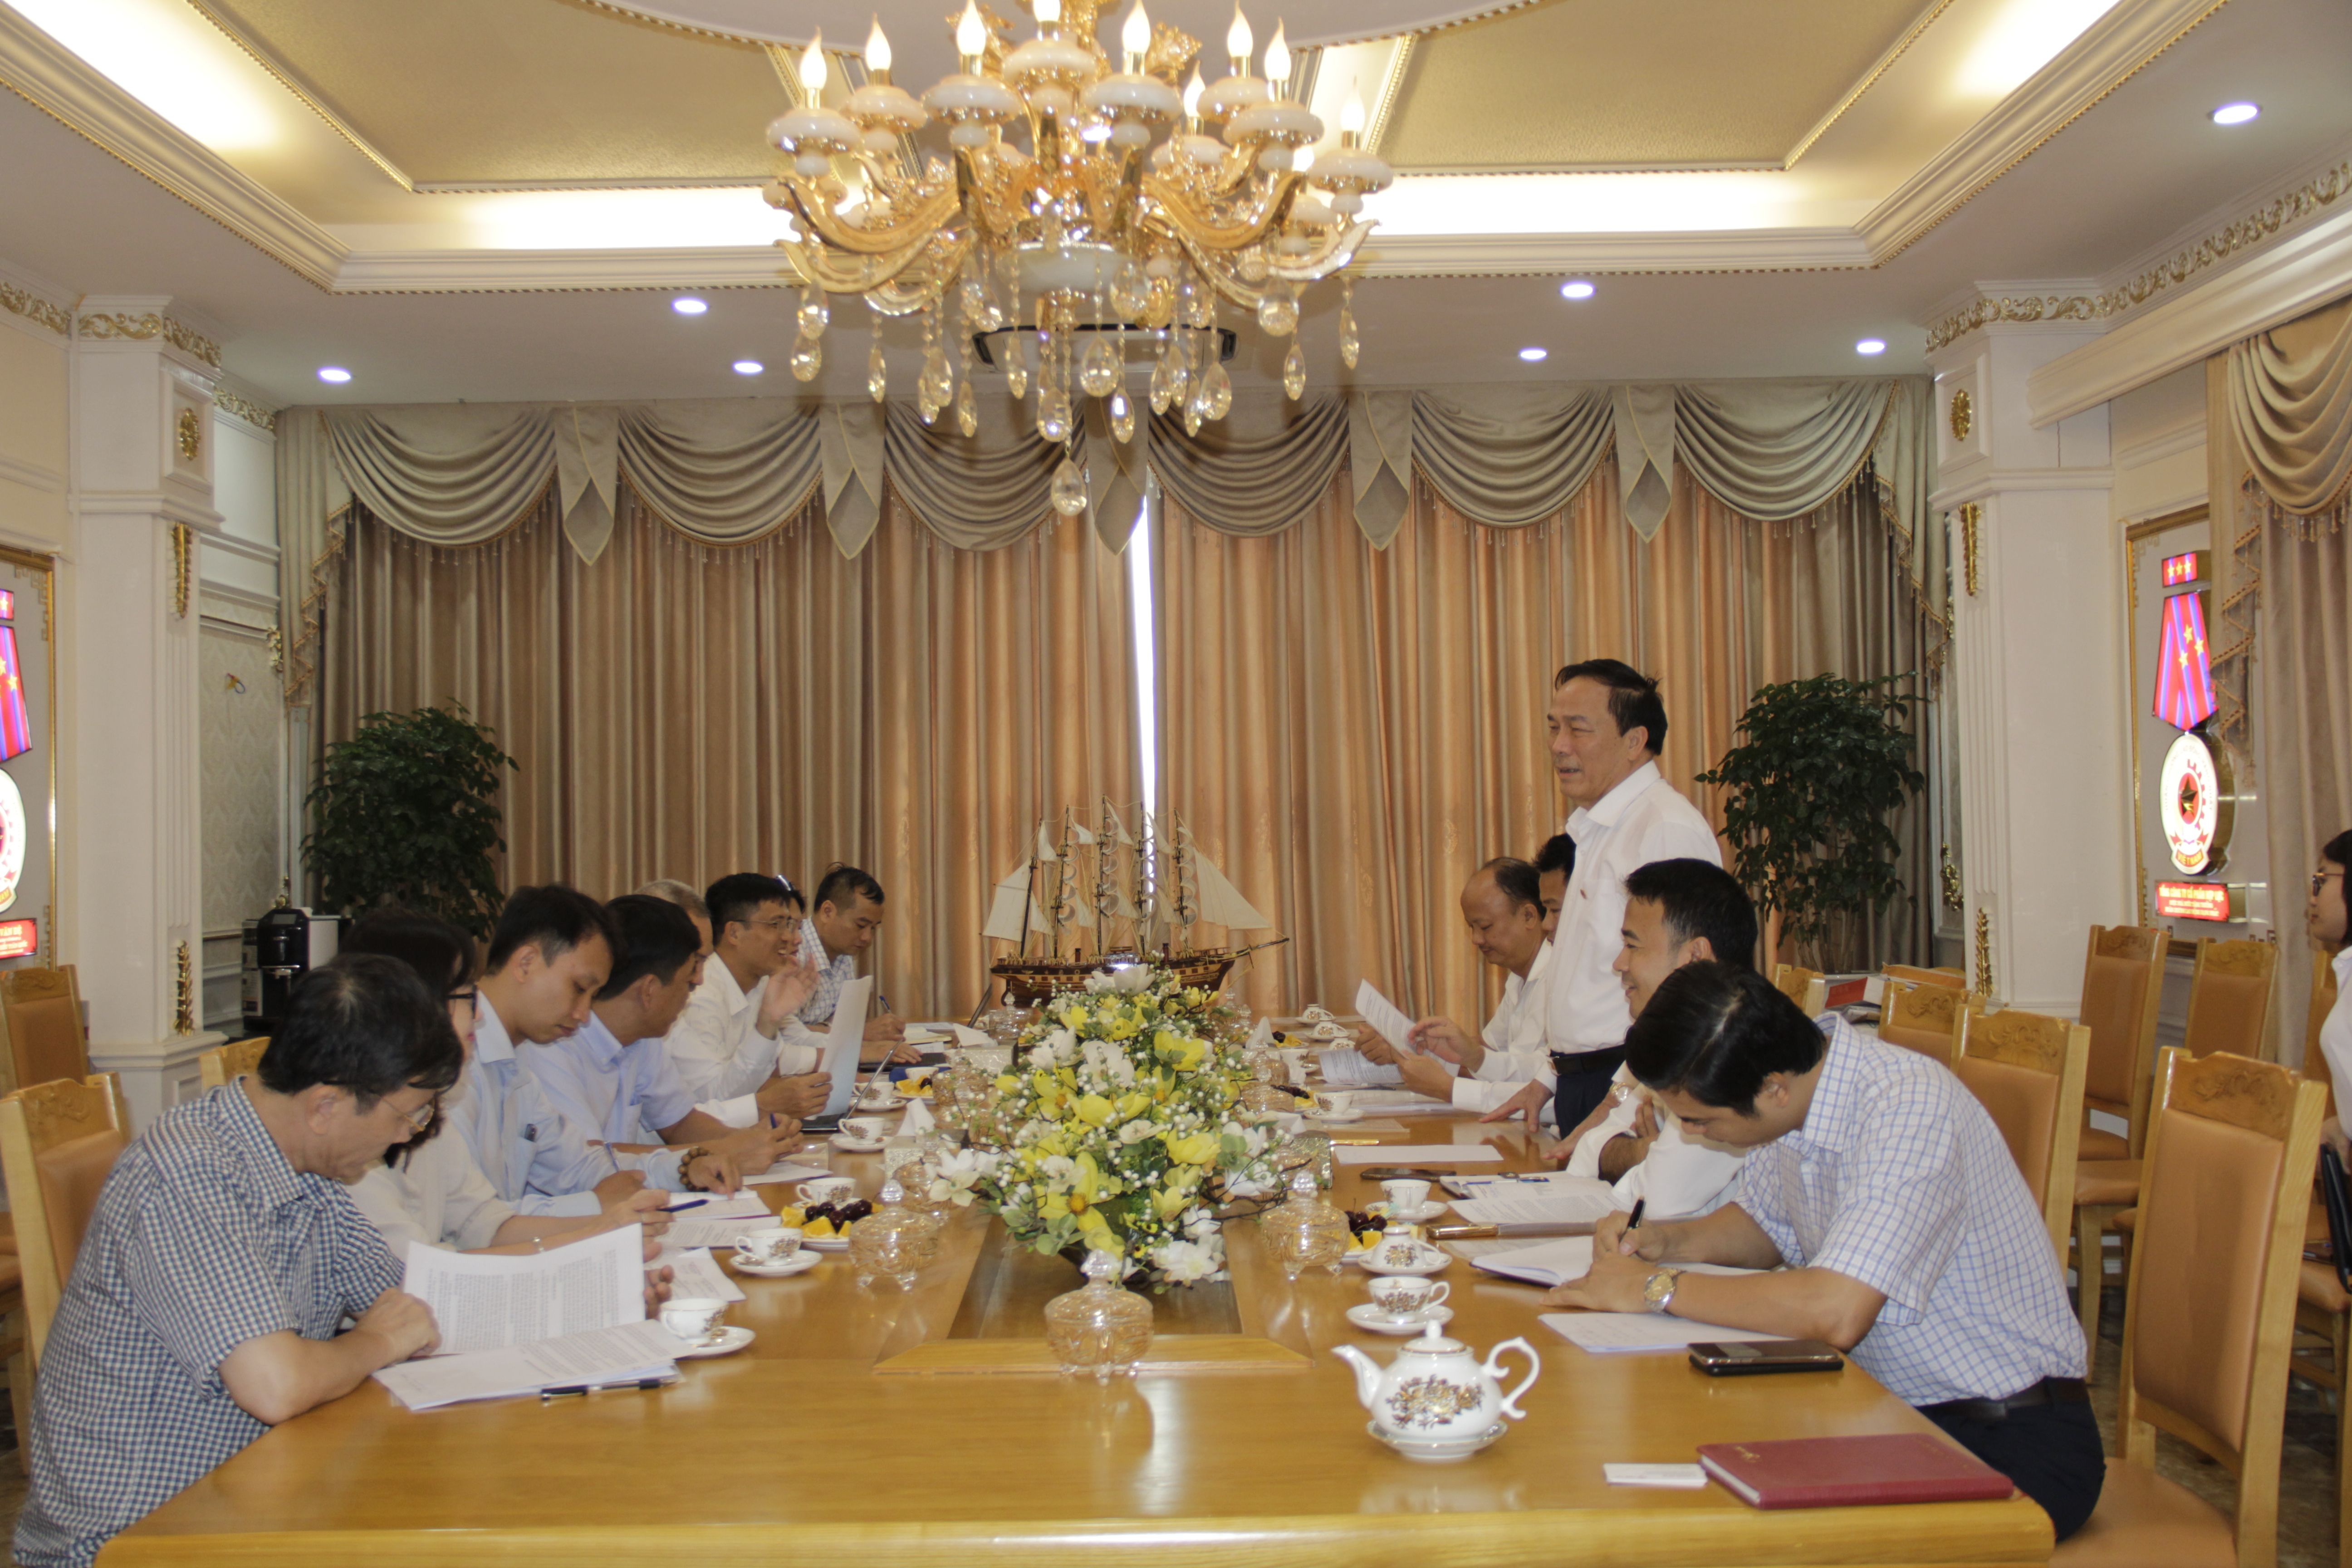 Viện Nghiên cứu quản lý kinh tế Trung ương làm việc với Hiệp hội doanh nghiệp tỉnh Thanh Hóa